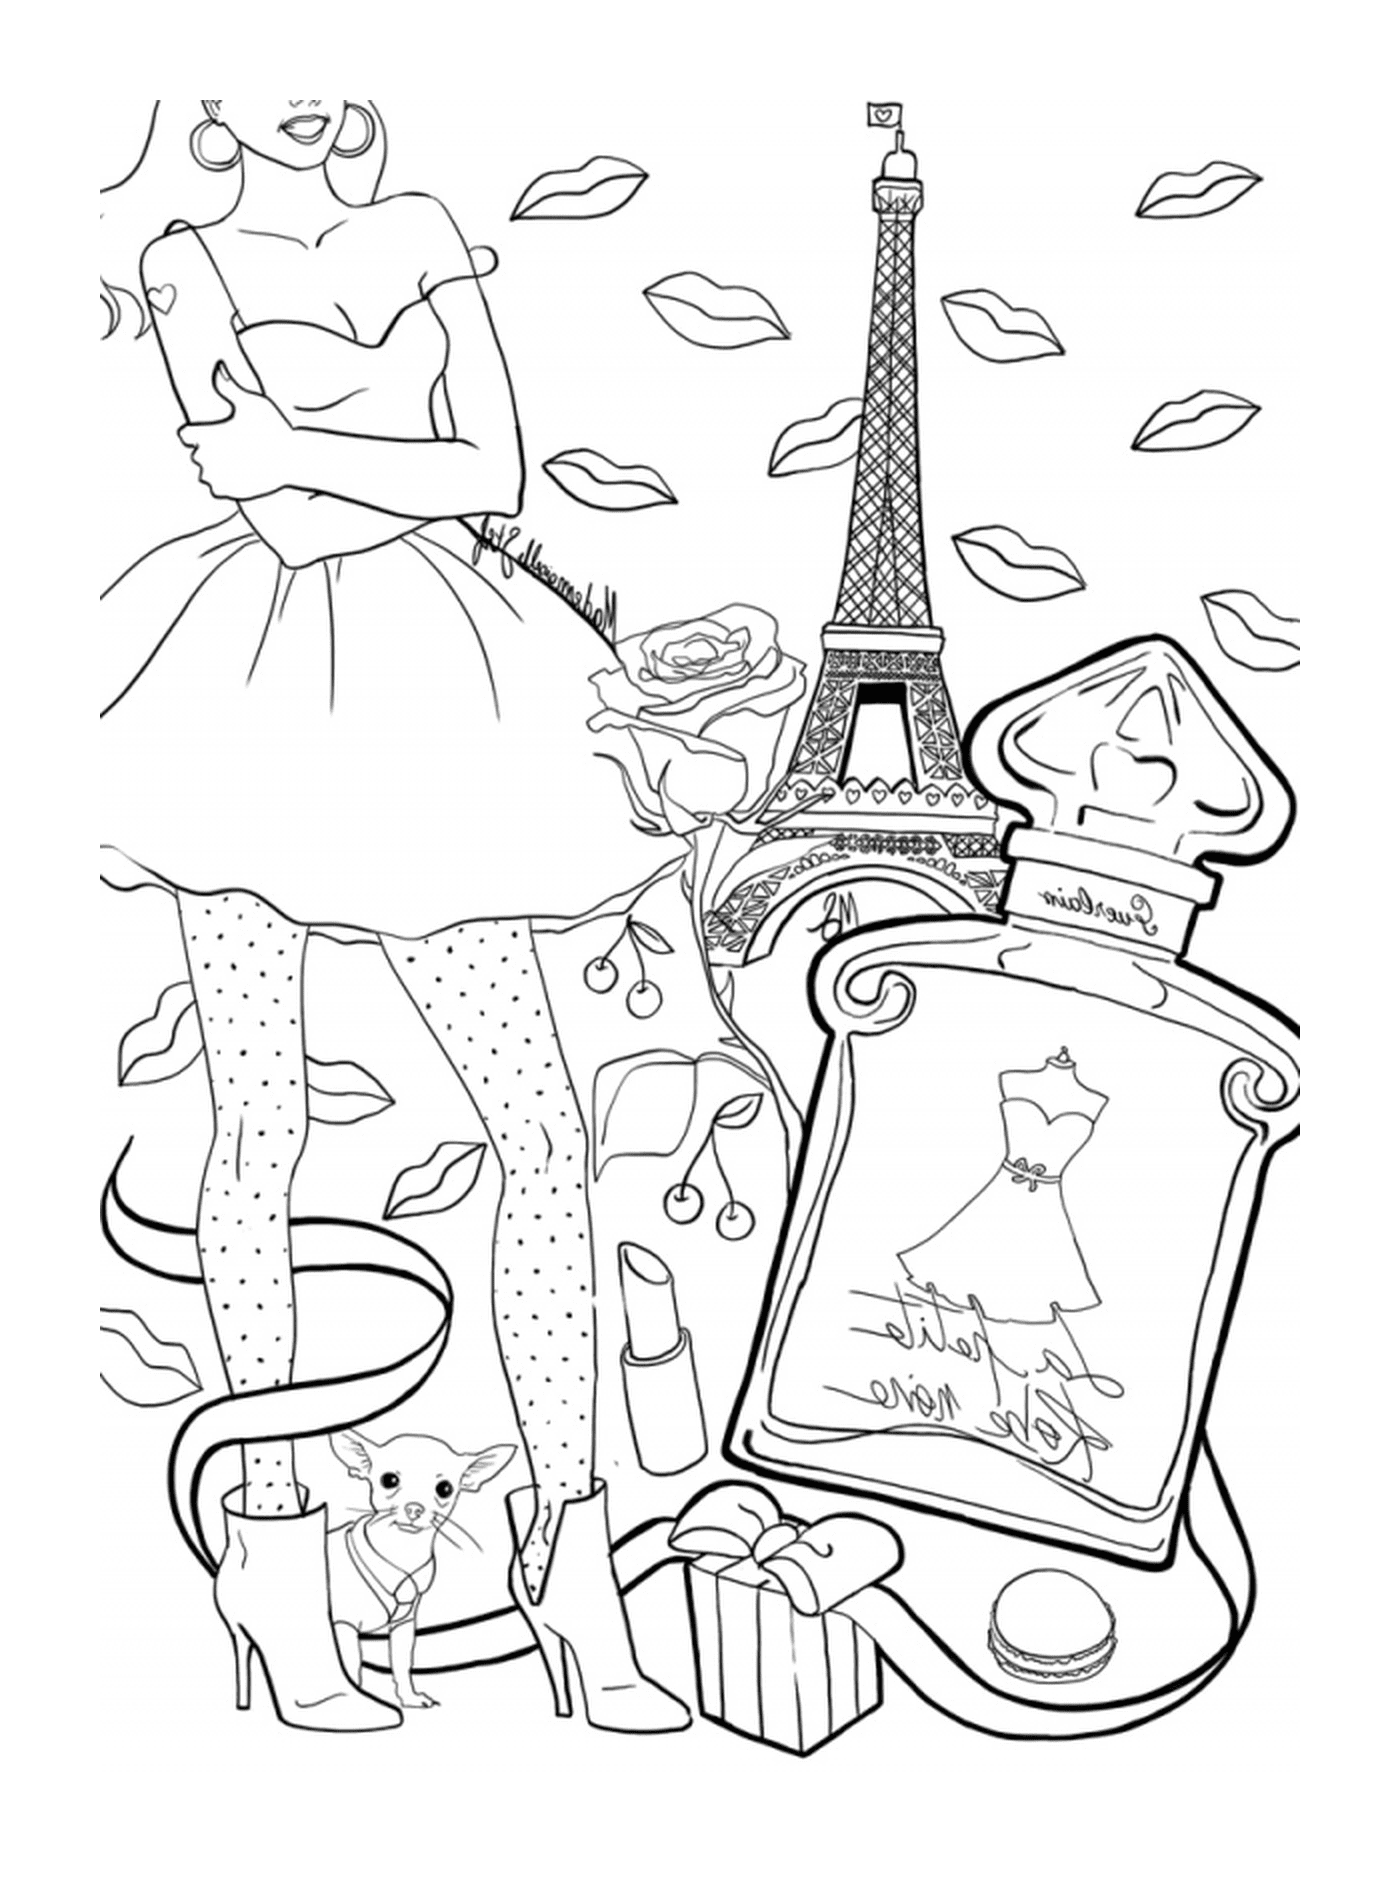  पैरिस के एक पोशाक में एक महिला एक ट्रेलर के साथ 